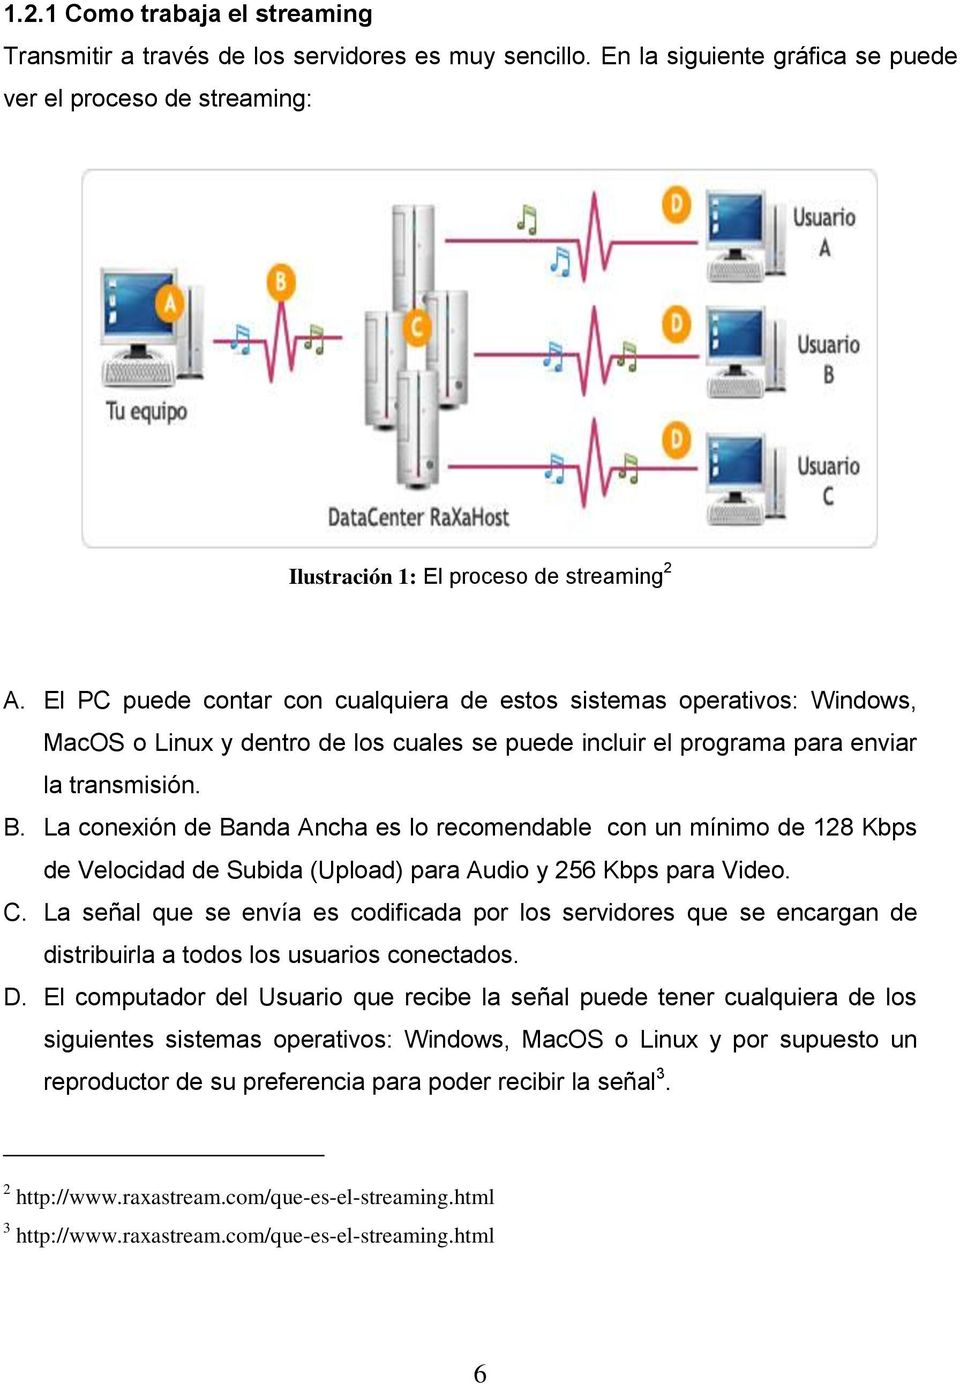 La conexión de Banda Ancha es lo recomendable con un mínimo de 128 Kbps de Velocidad de Subida (Upload) para Audio y 256 Kbps para Video. C.